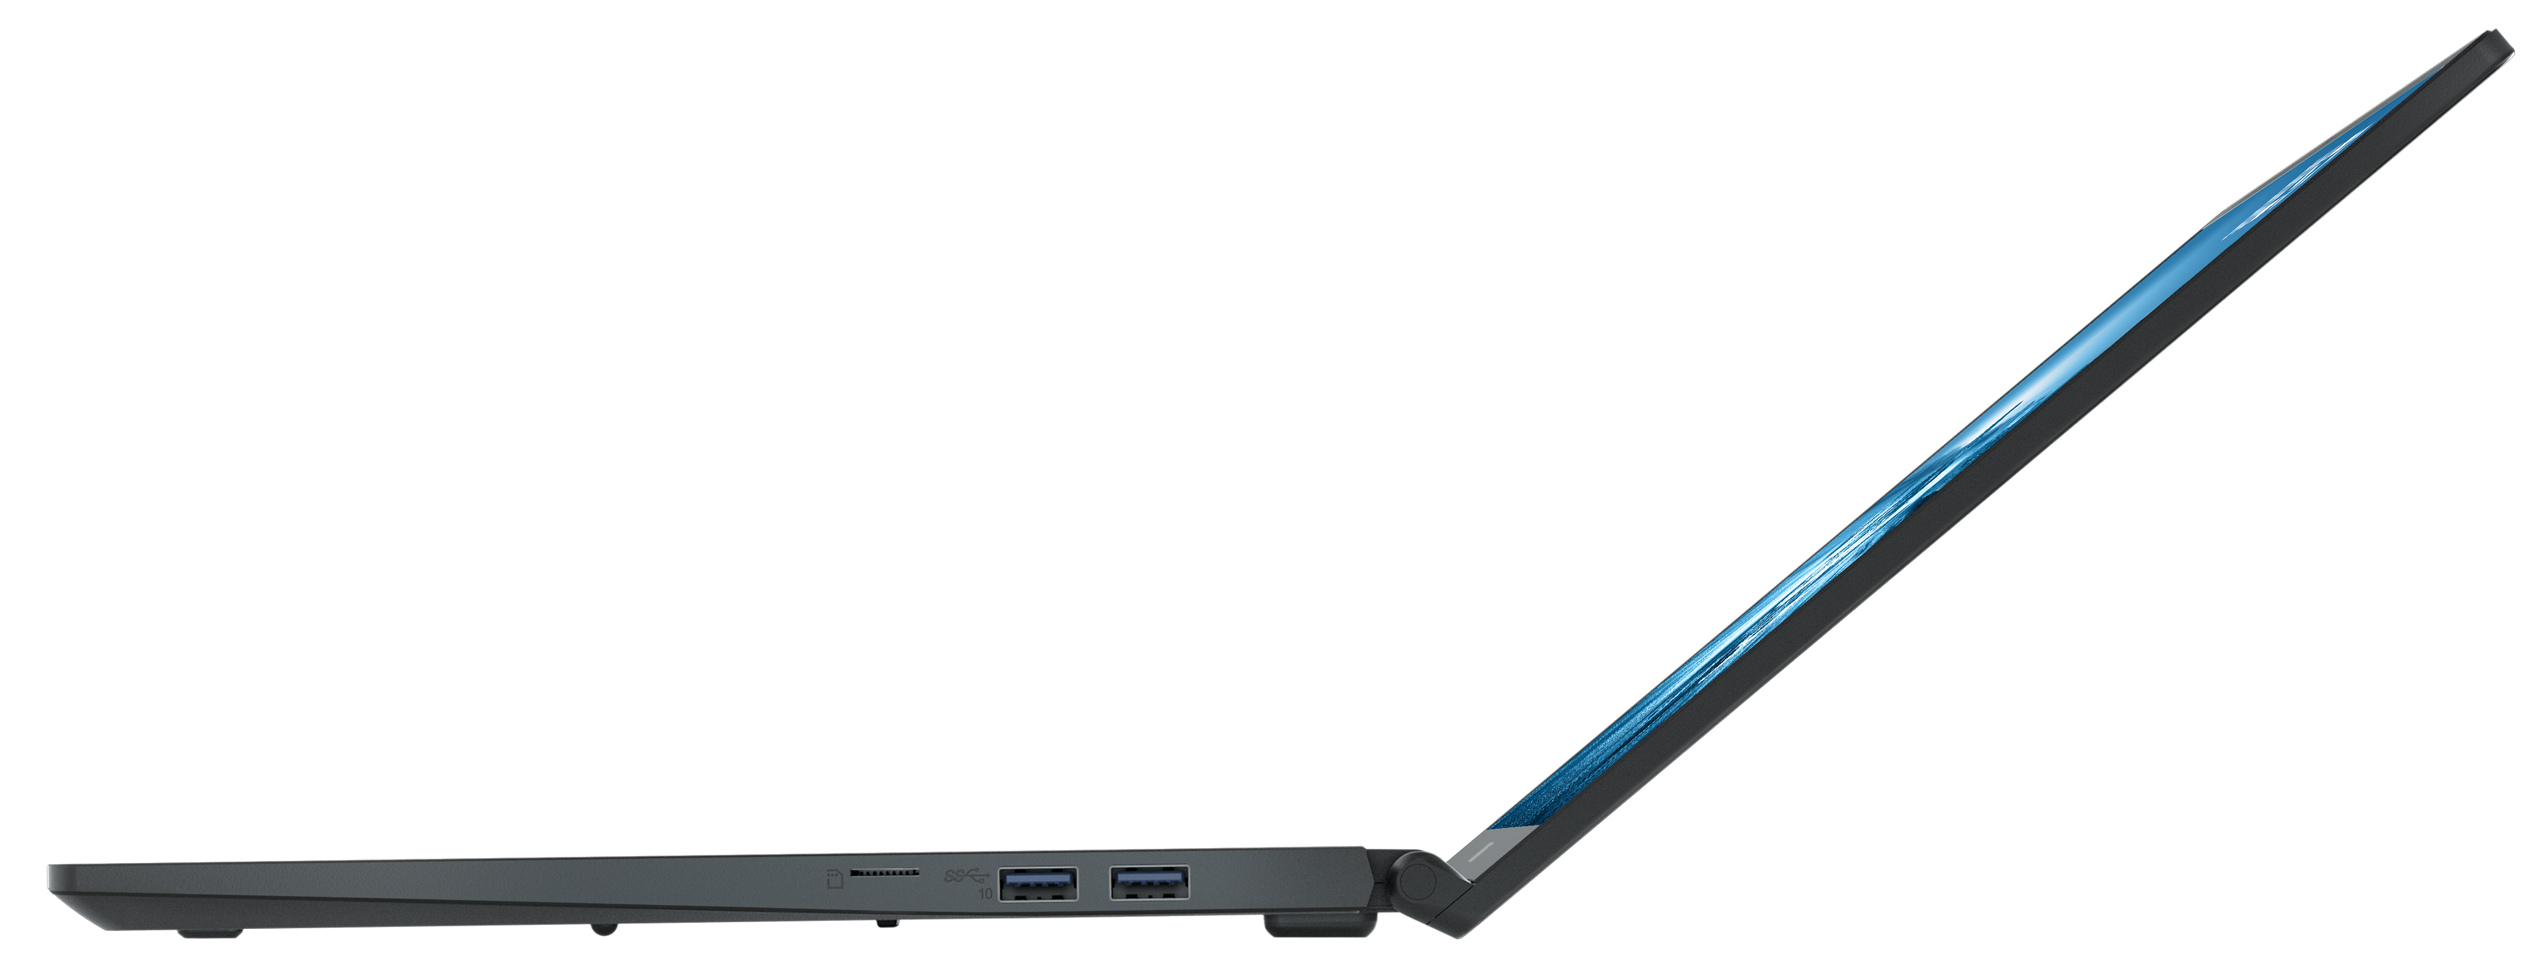 MSI PRESTIGE Display, SSD, 3050 GB Pro (64 Gaming i7 RAM, mit Zoll GeForce Core™ TB Windows Intel® Prozessor, RTX™ A12UD-093, 15 32 Ti, Carbon-Grau NVIDIA, 1 15,6 11 Bit) Notebook